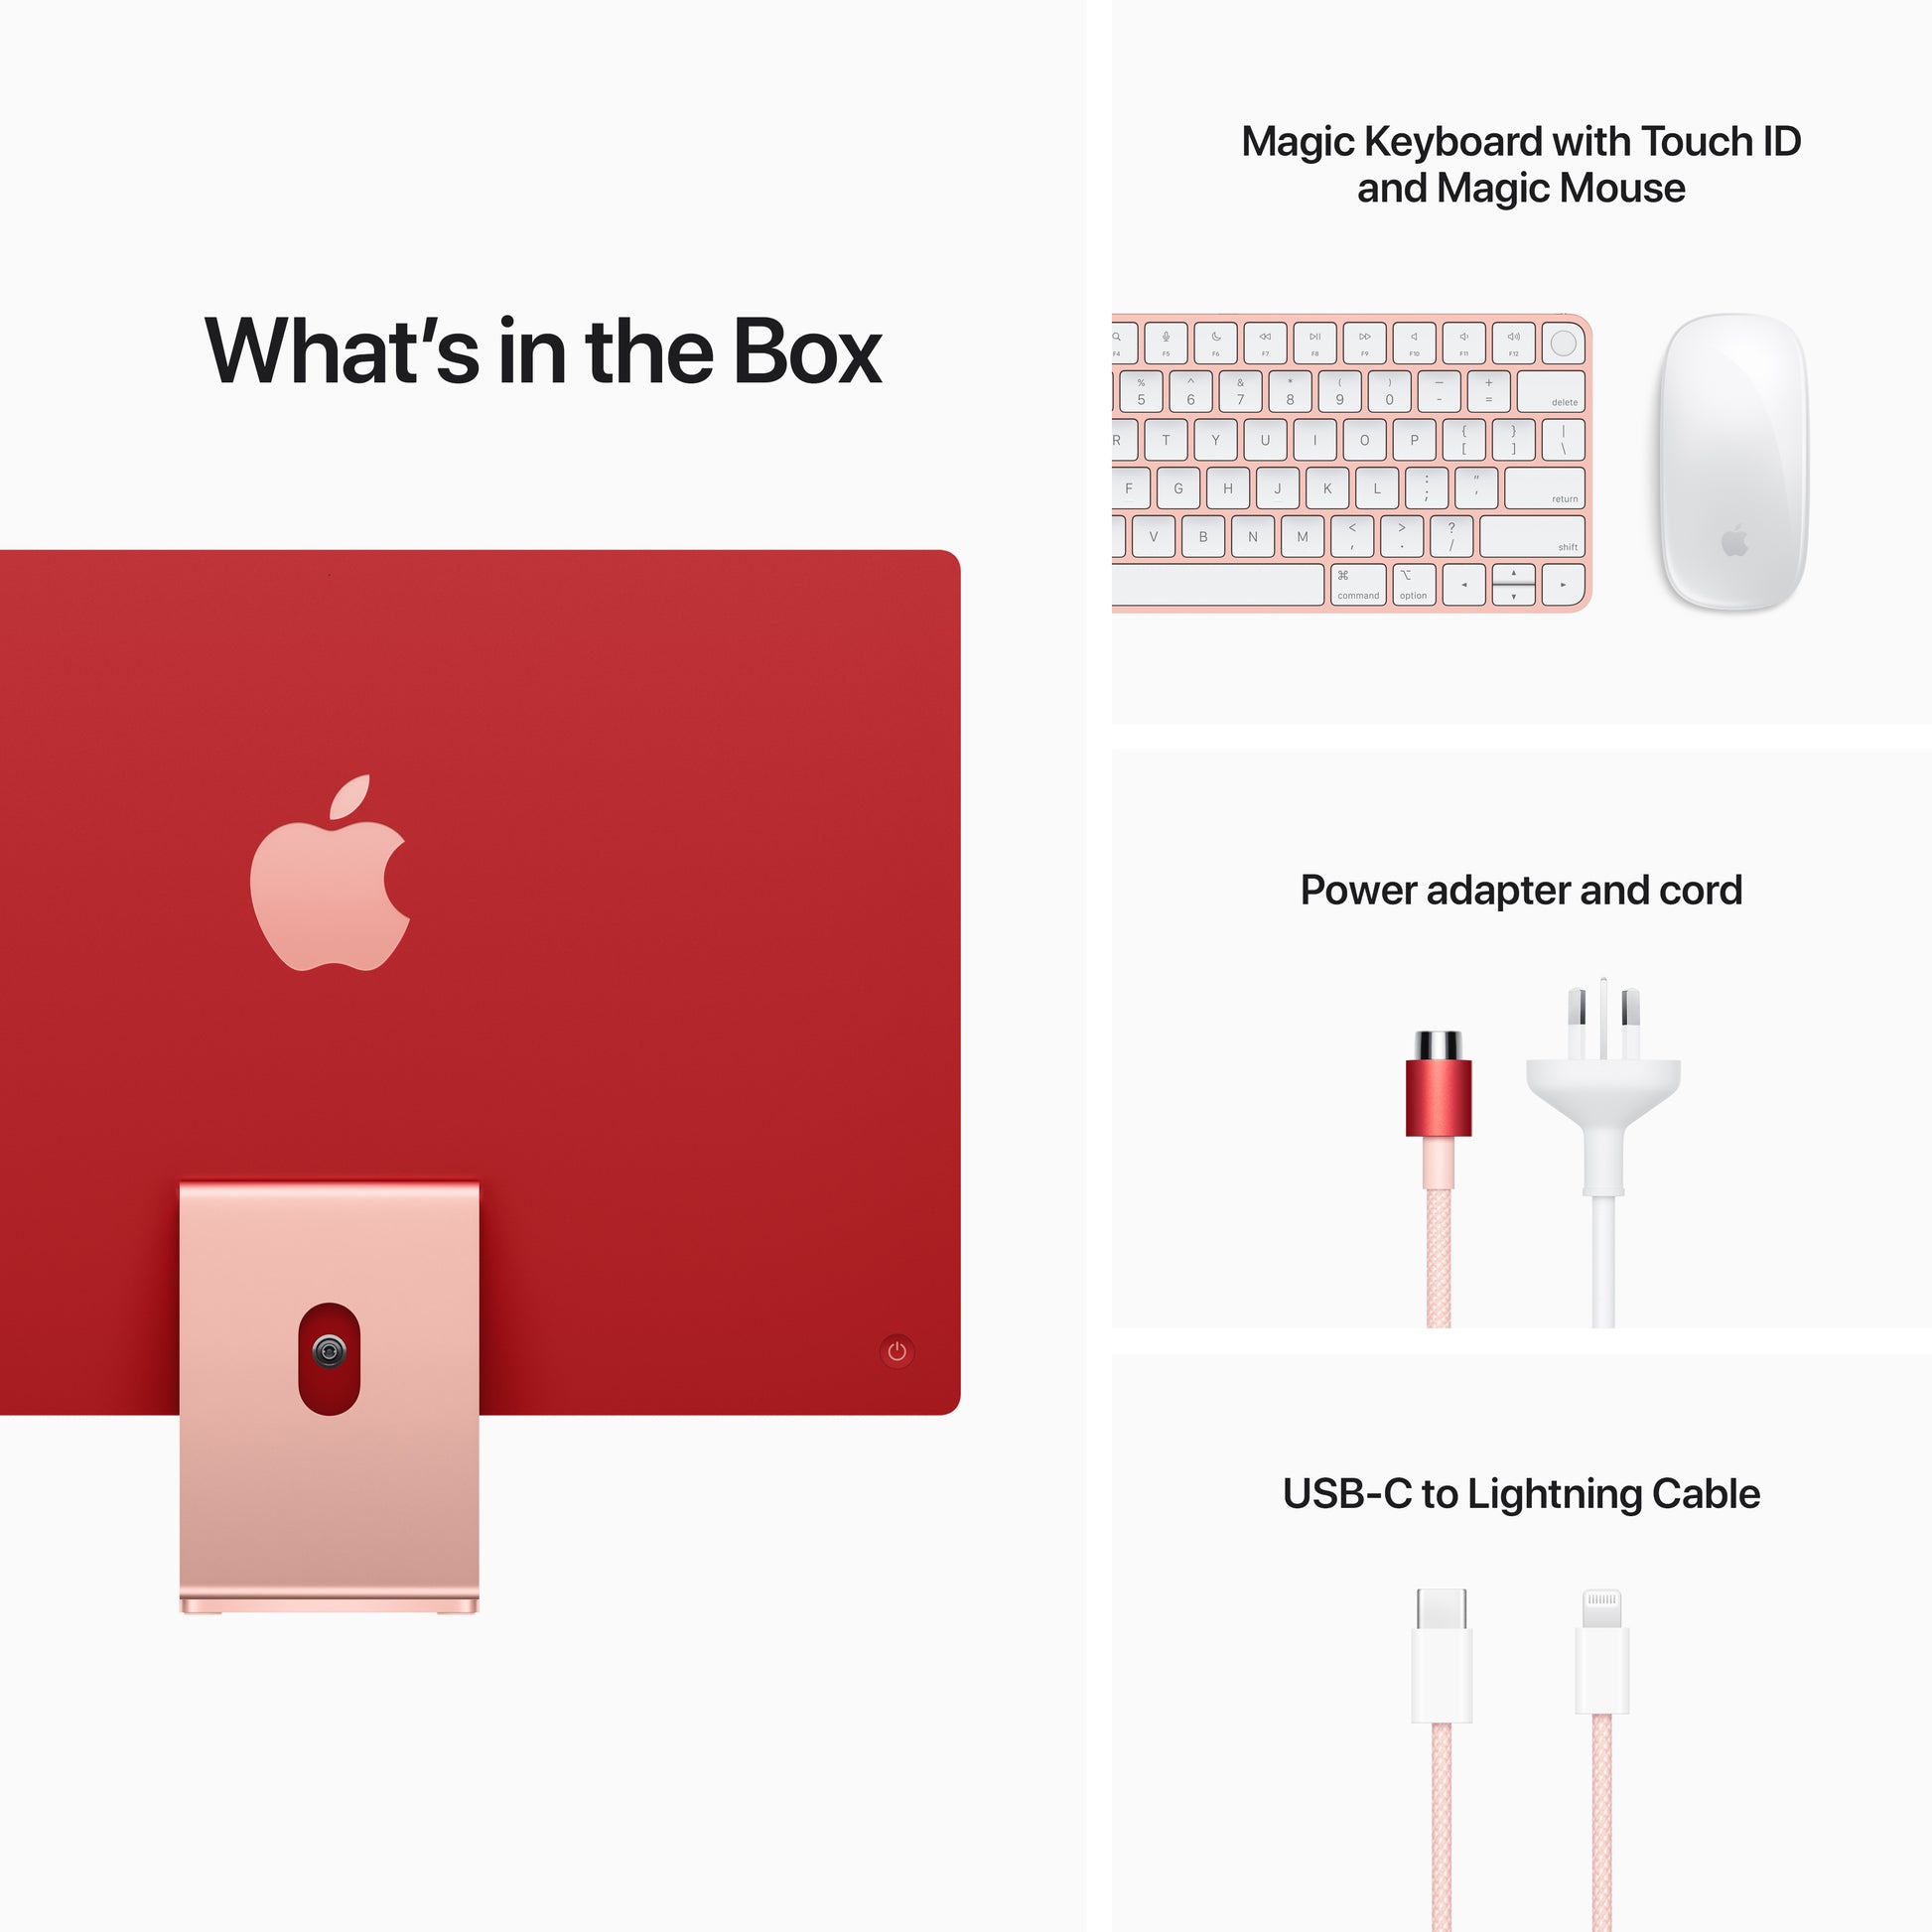 Apple iMac 24-inch | M1 | 8-core CPU | 8-core GPU | Pink